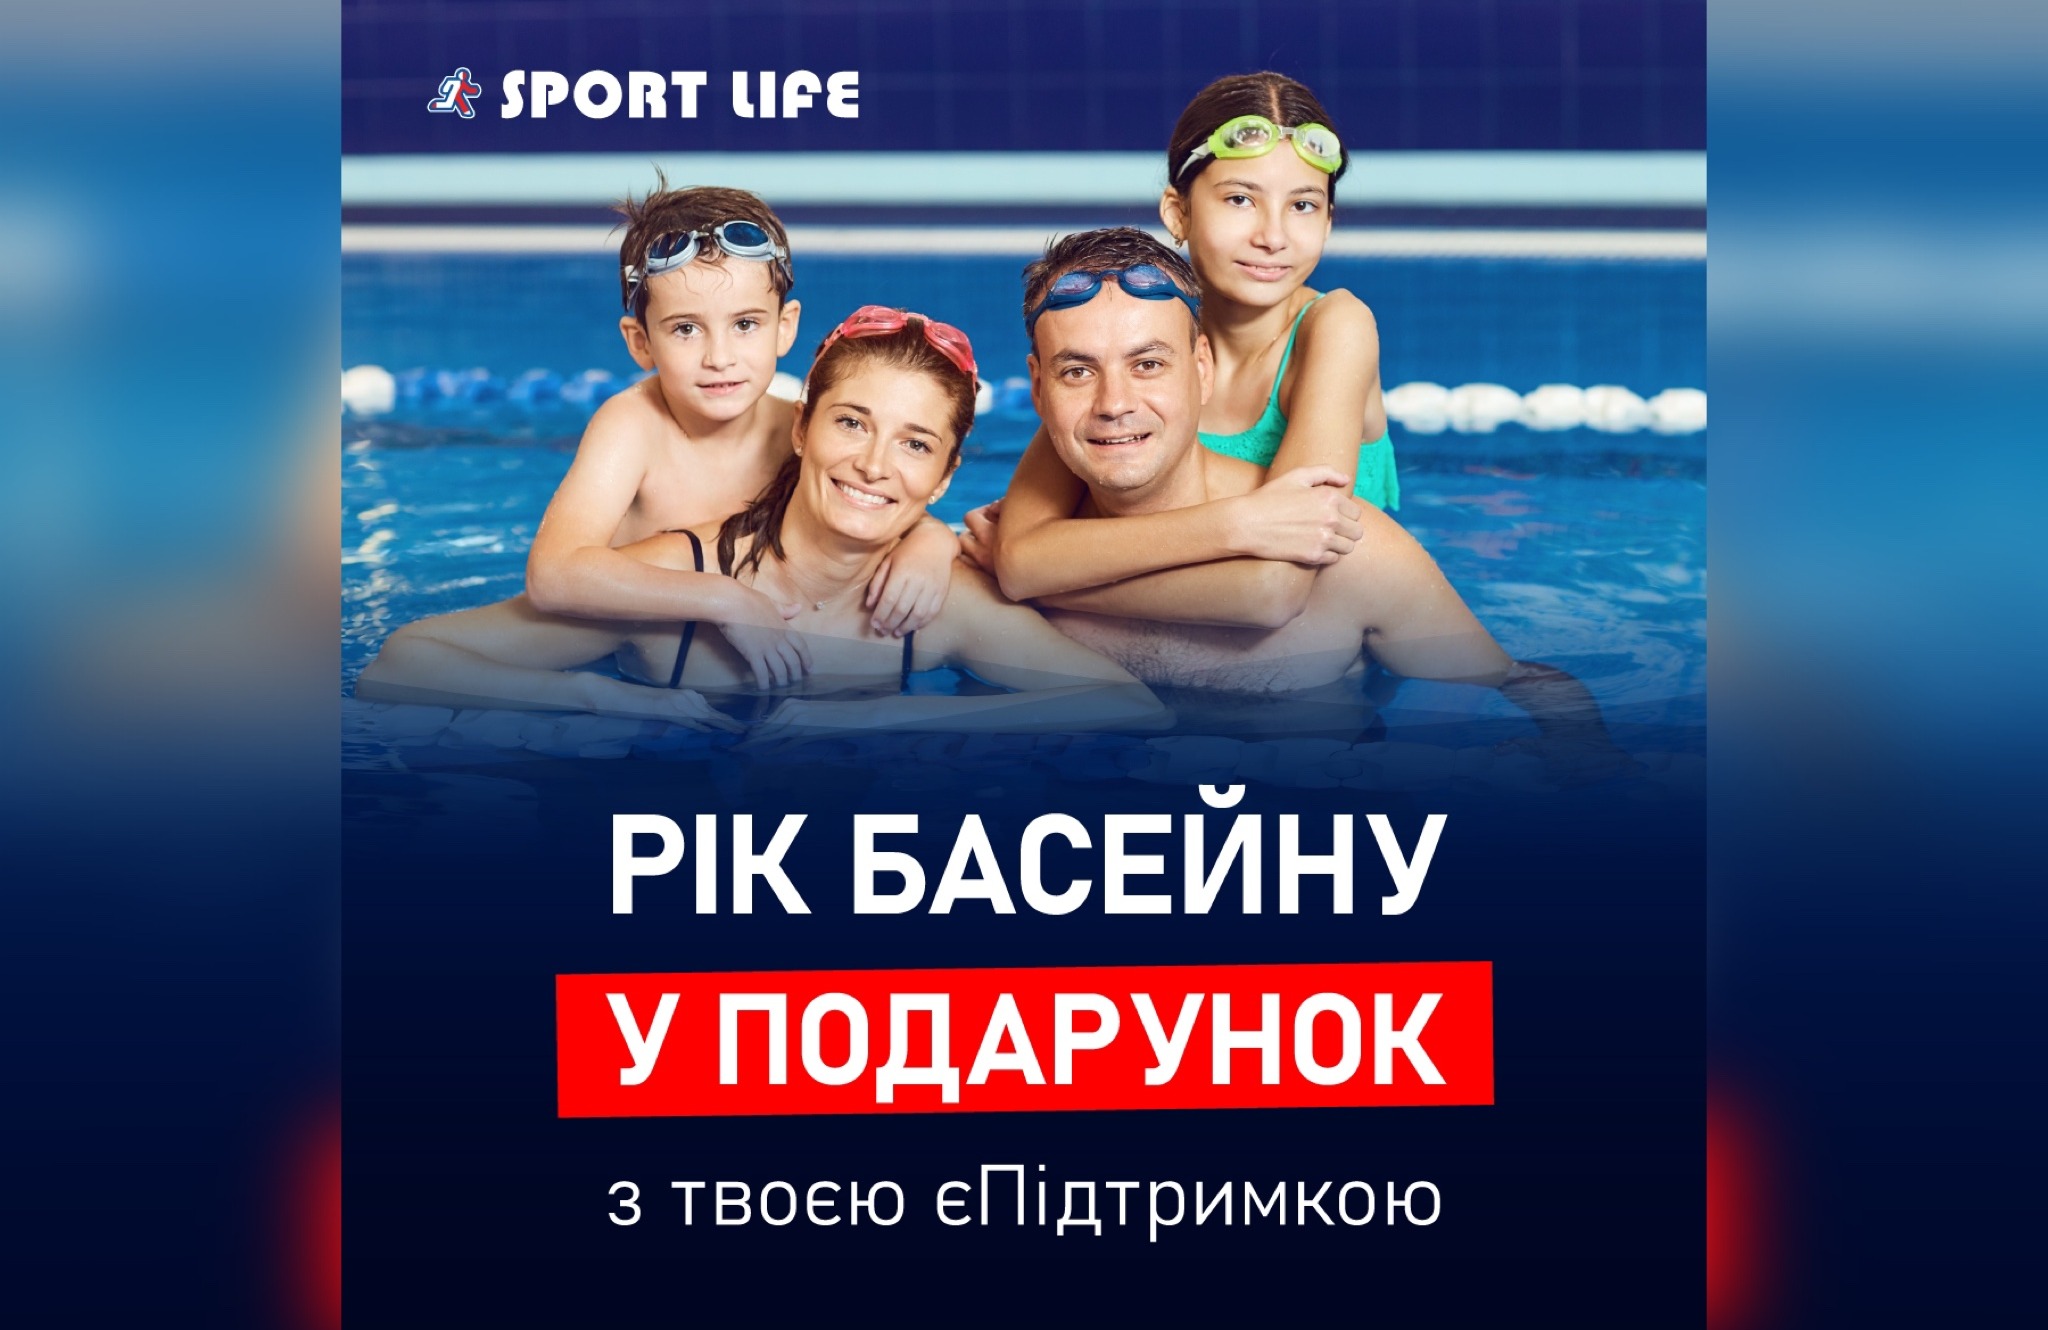 Sportlife Nikolsky